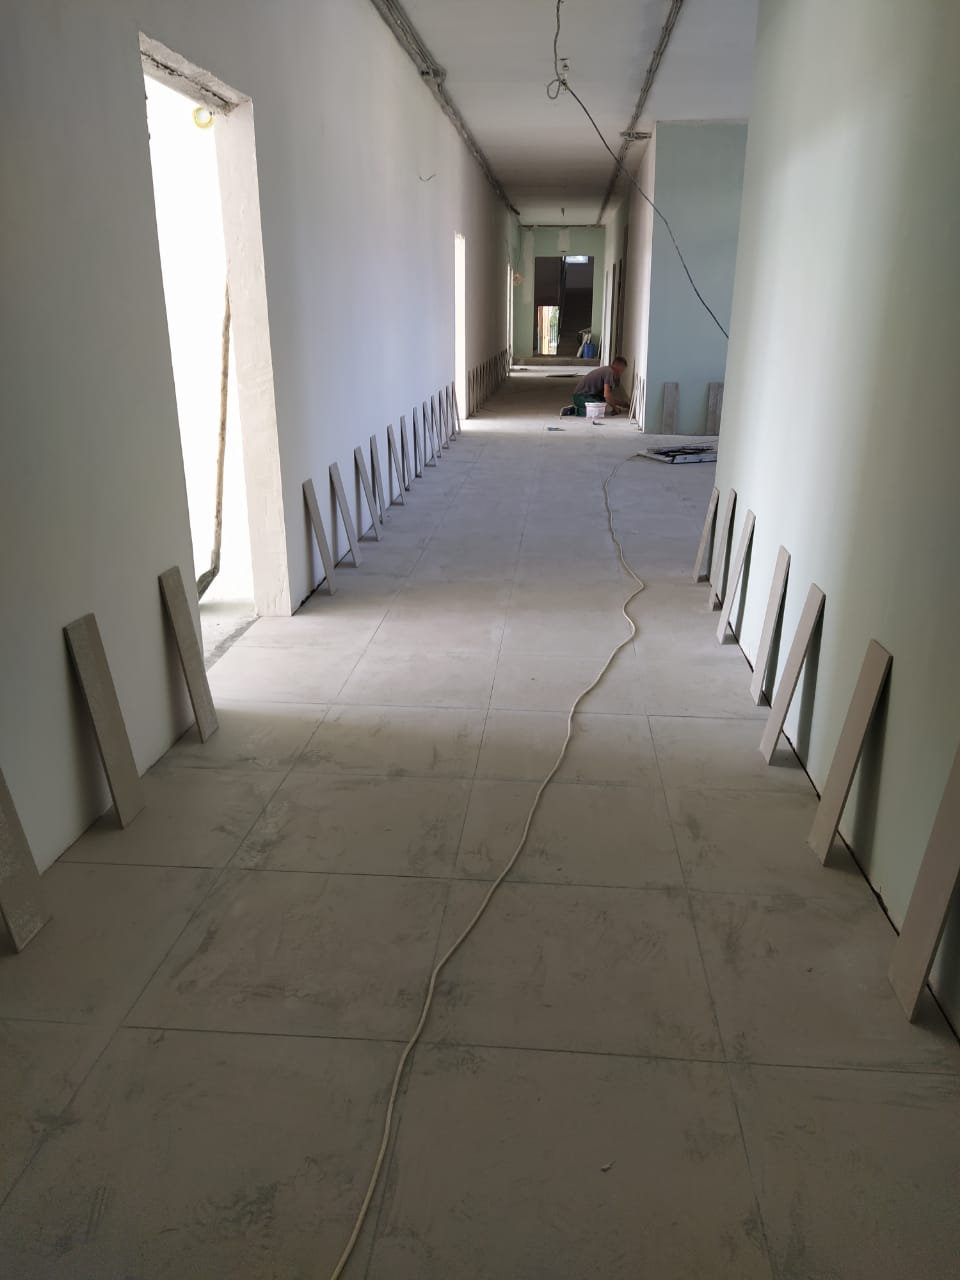 плитка в коридор на первом этаже